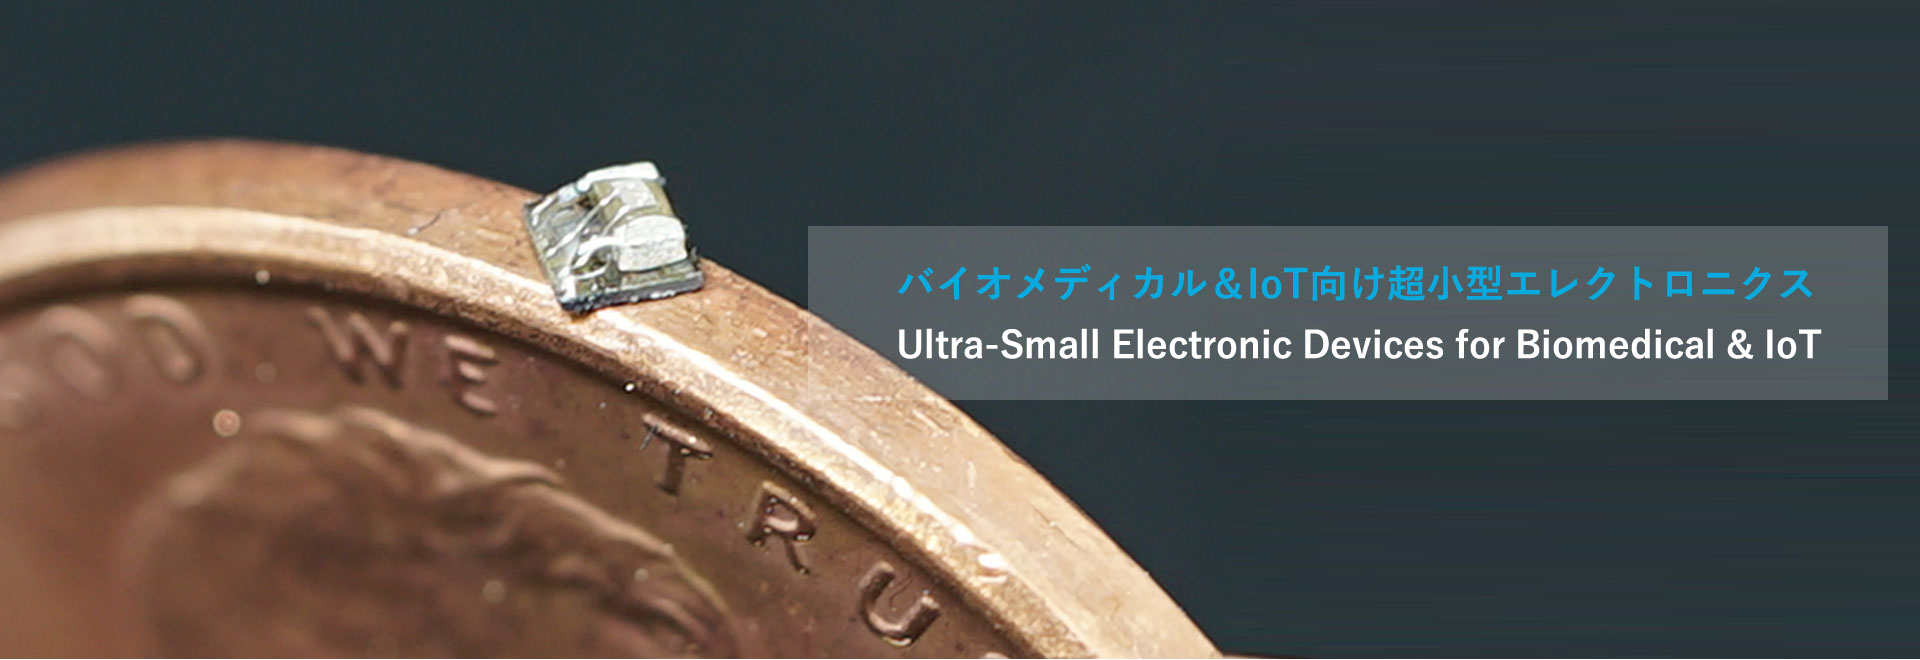 バイオメディカル＆IoT向け超小型エレクトロニクス Ultra-Small Electronic Devices for Biomedical & IoT